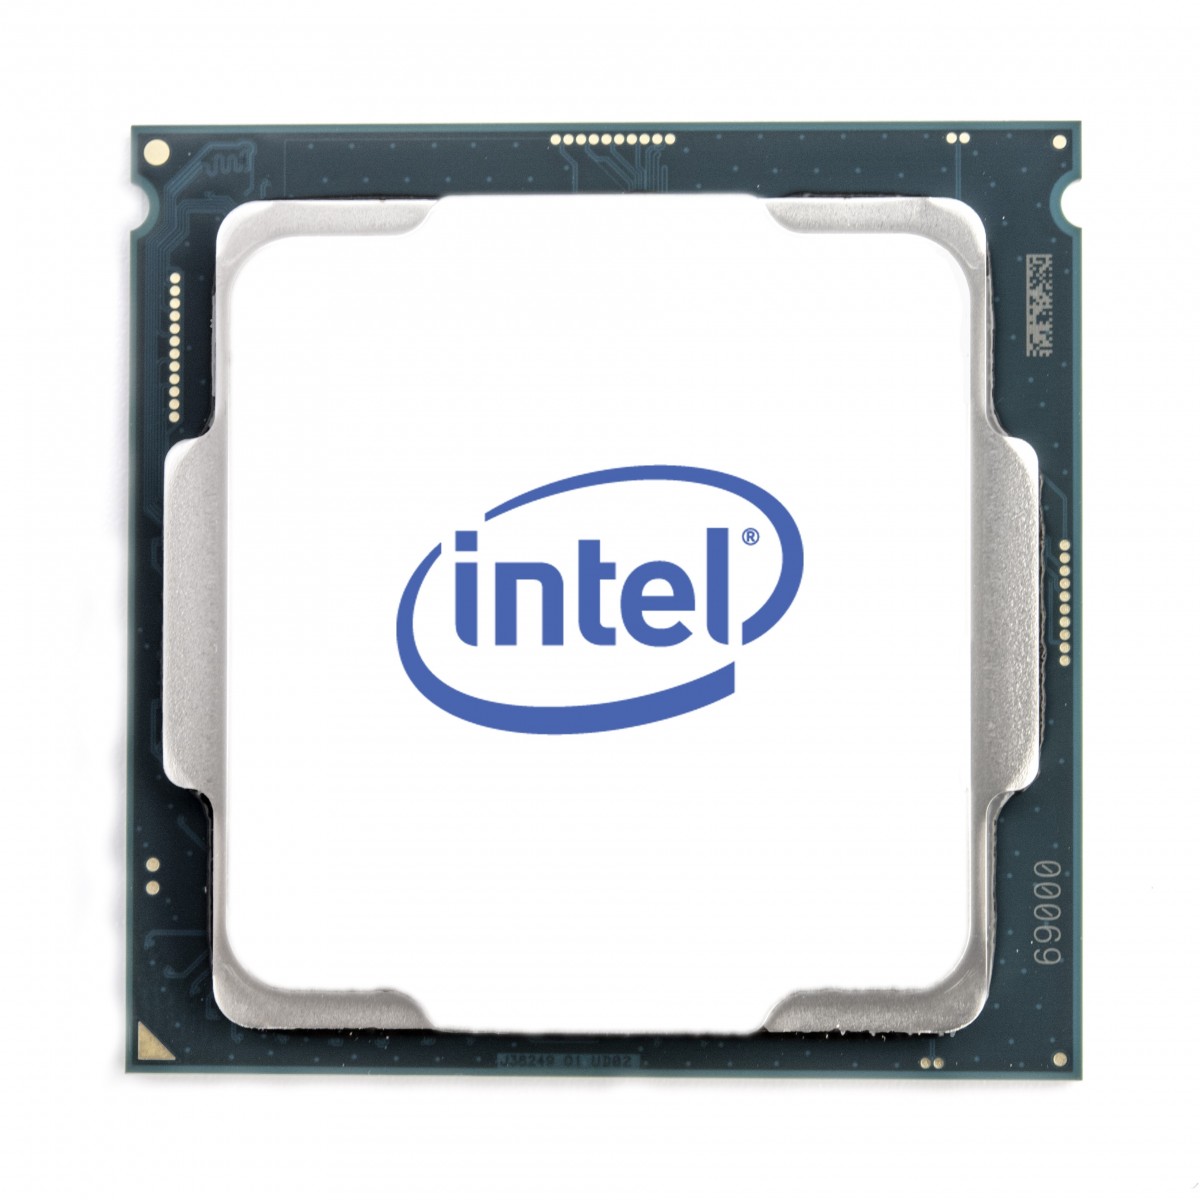 Intel Xeon E-2104 3.2 GHz - Skt 1151 Coffee Lake